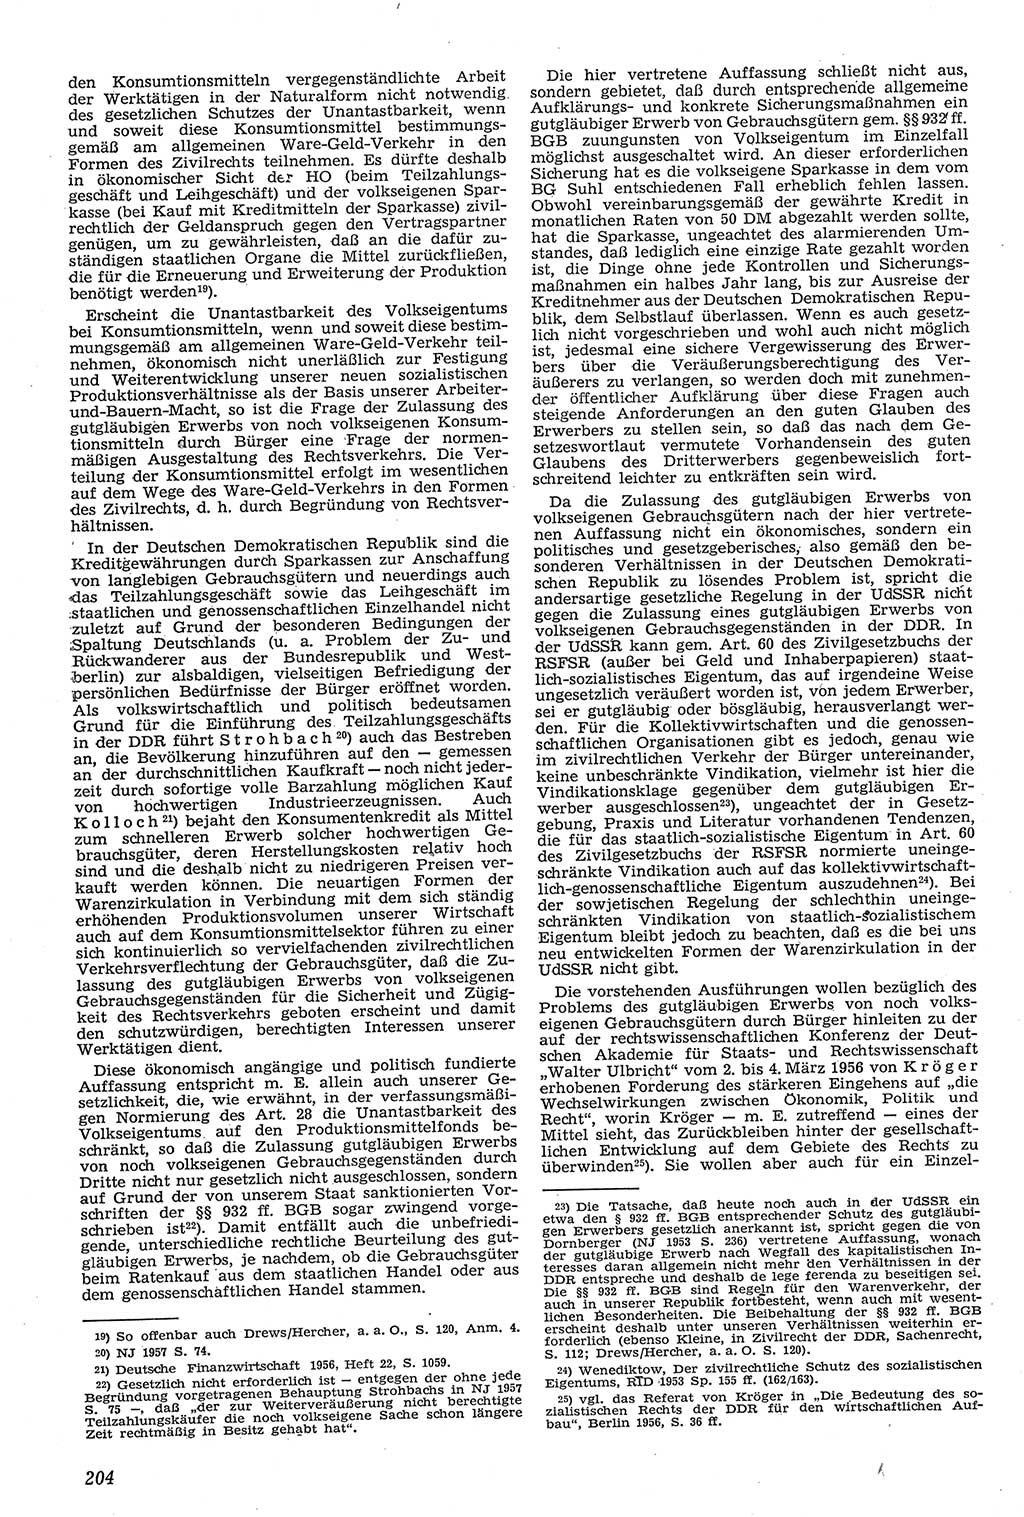 Neue Justiz (NJ), Zeitschrift für Recht und Rechtswissenschaft [Deutsche Demokratische Republik (DDR)], 11. Jahrgang 1957, Seite 204 (NJ DDR 1957, S. 204)